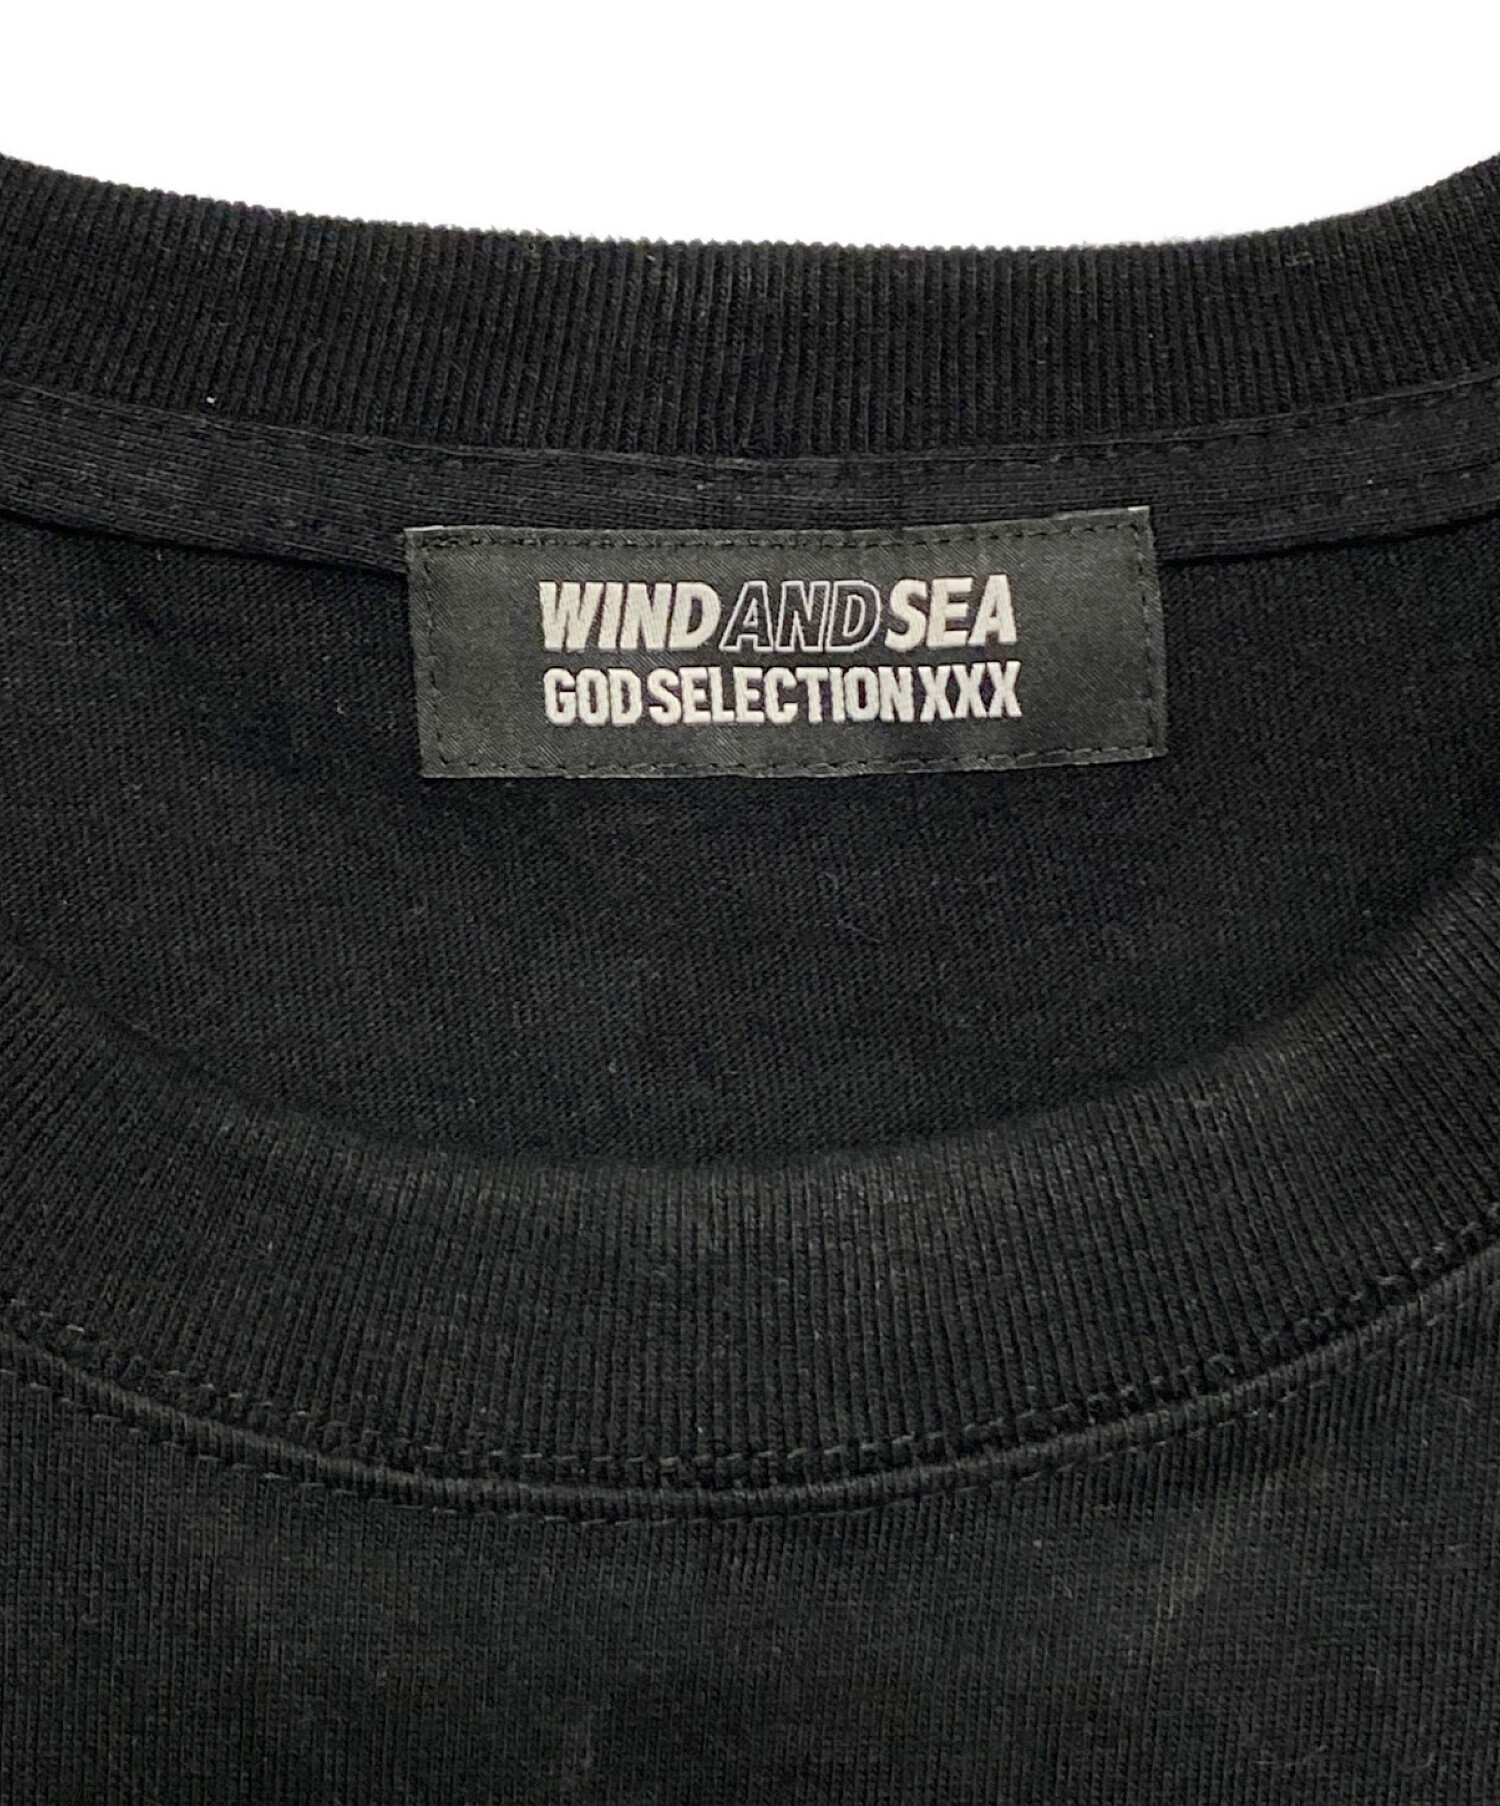 WIND AND SEA (ウィンダンシー) GOD SELECTION XXX (ゴッドセレクショントリプルエックス) Tシャツ ブラック  サイズ:XL